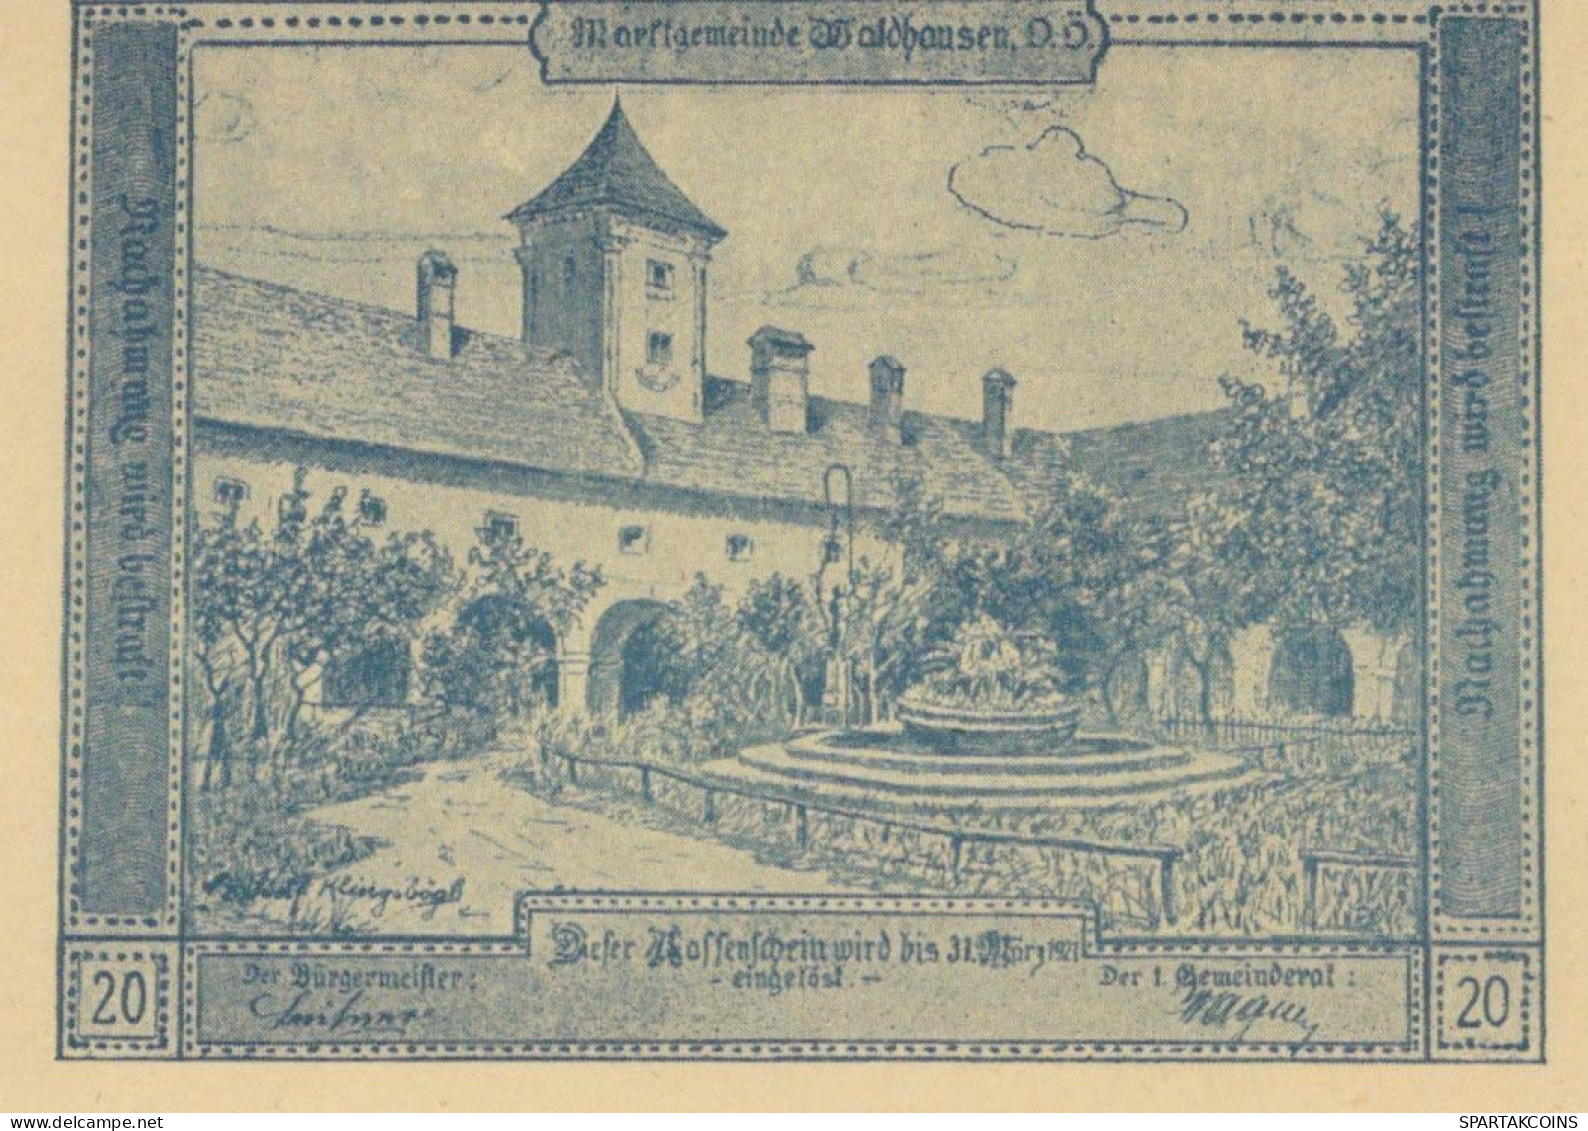 20 HELLER 1920 Stadt WALDHAUSEN Oberösterreich Österreich Notgeld Papiergeld Banknote #PG739 - Lokale Ausgaben